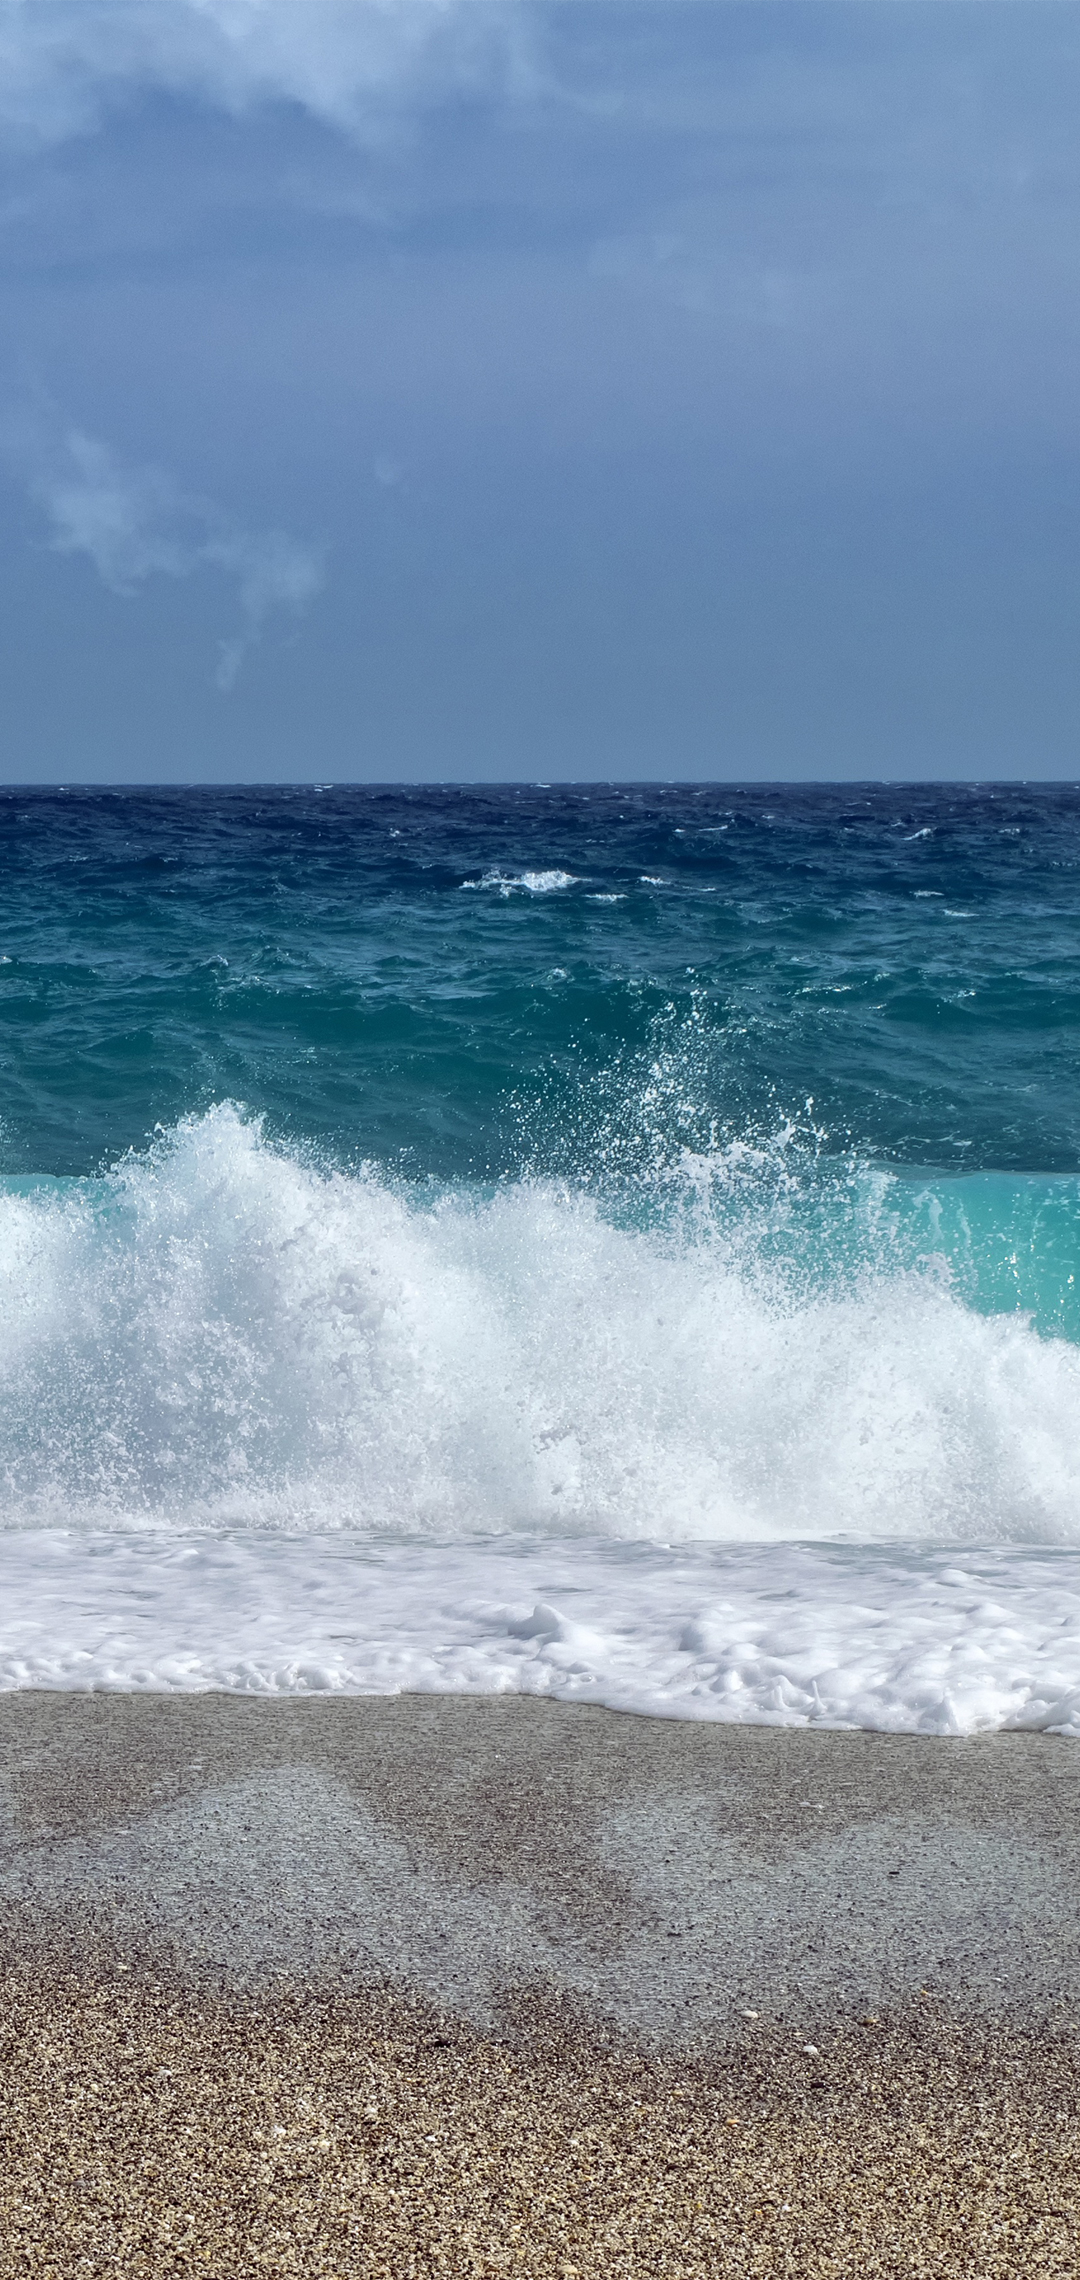 碧海蓝天,清凉整个夏天,蓝蓝的海湾,无水印高清手机壁纸分享!